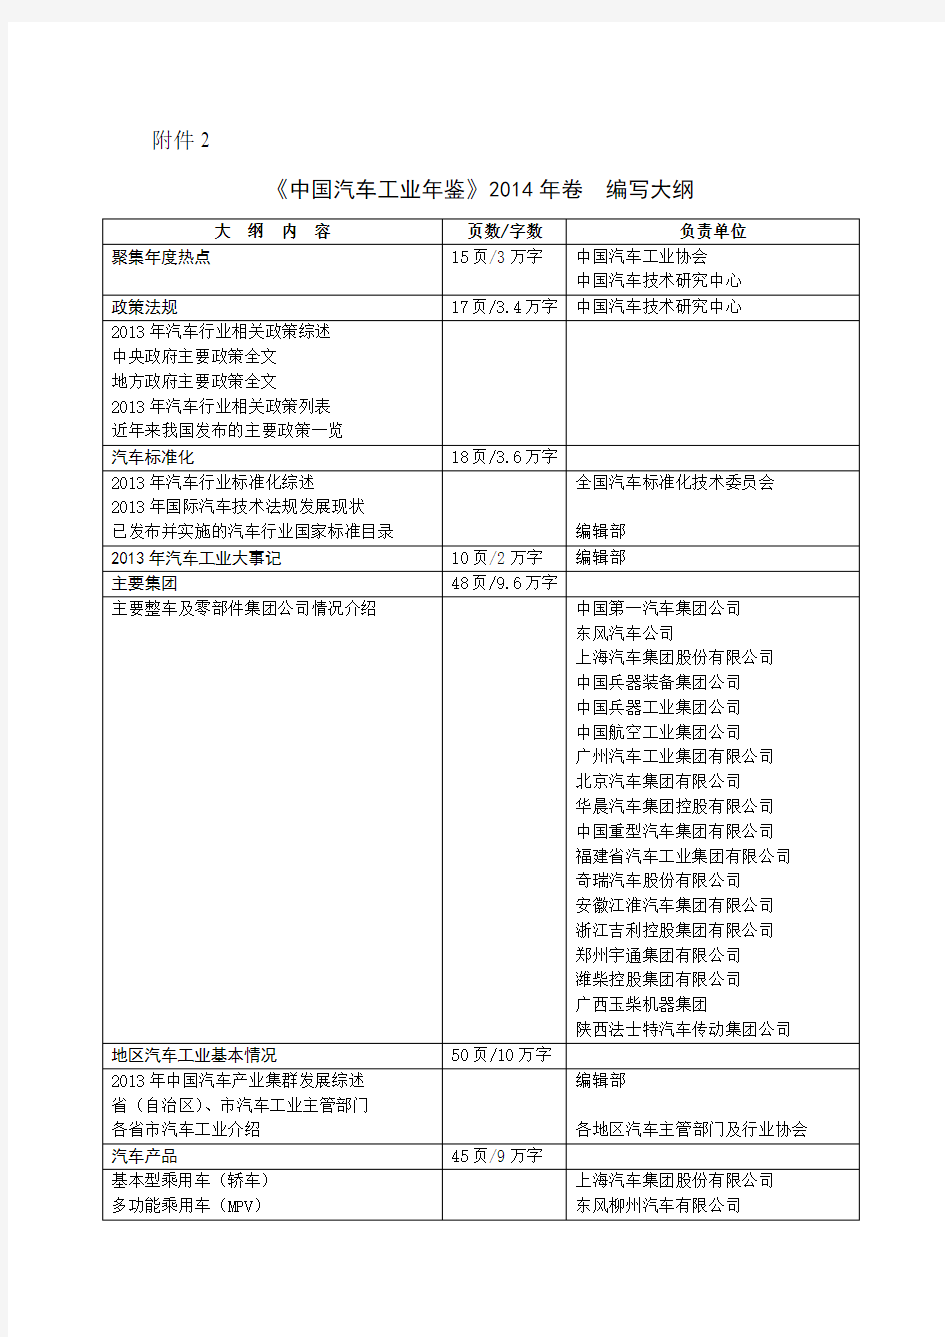 中国汽车工业年鉴-中华人民共和国工业和信息化部